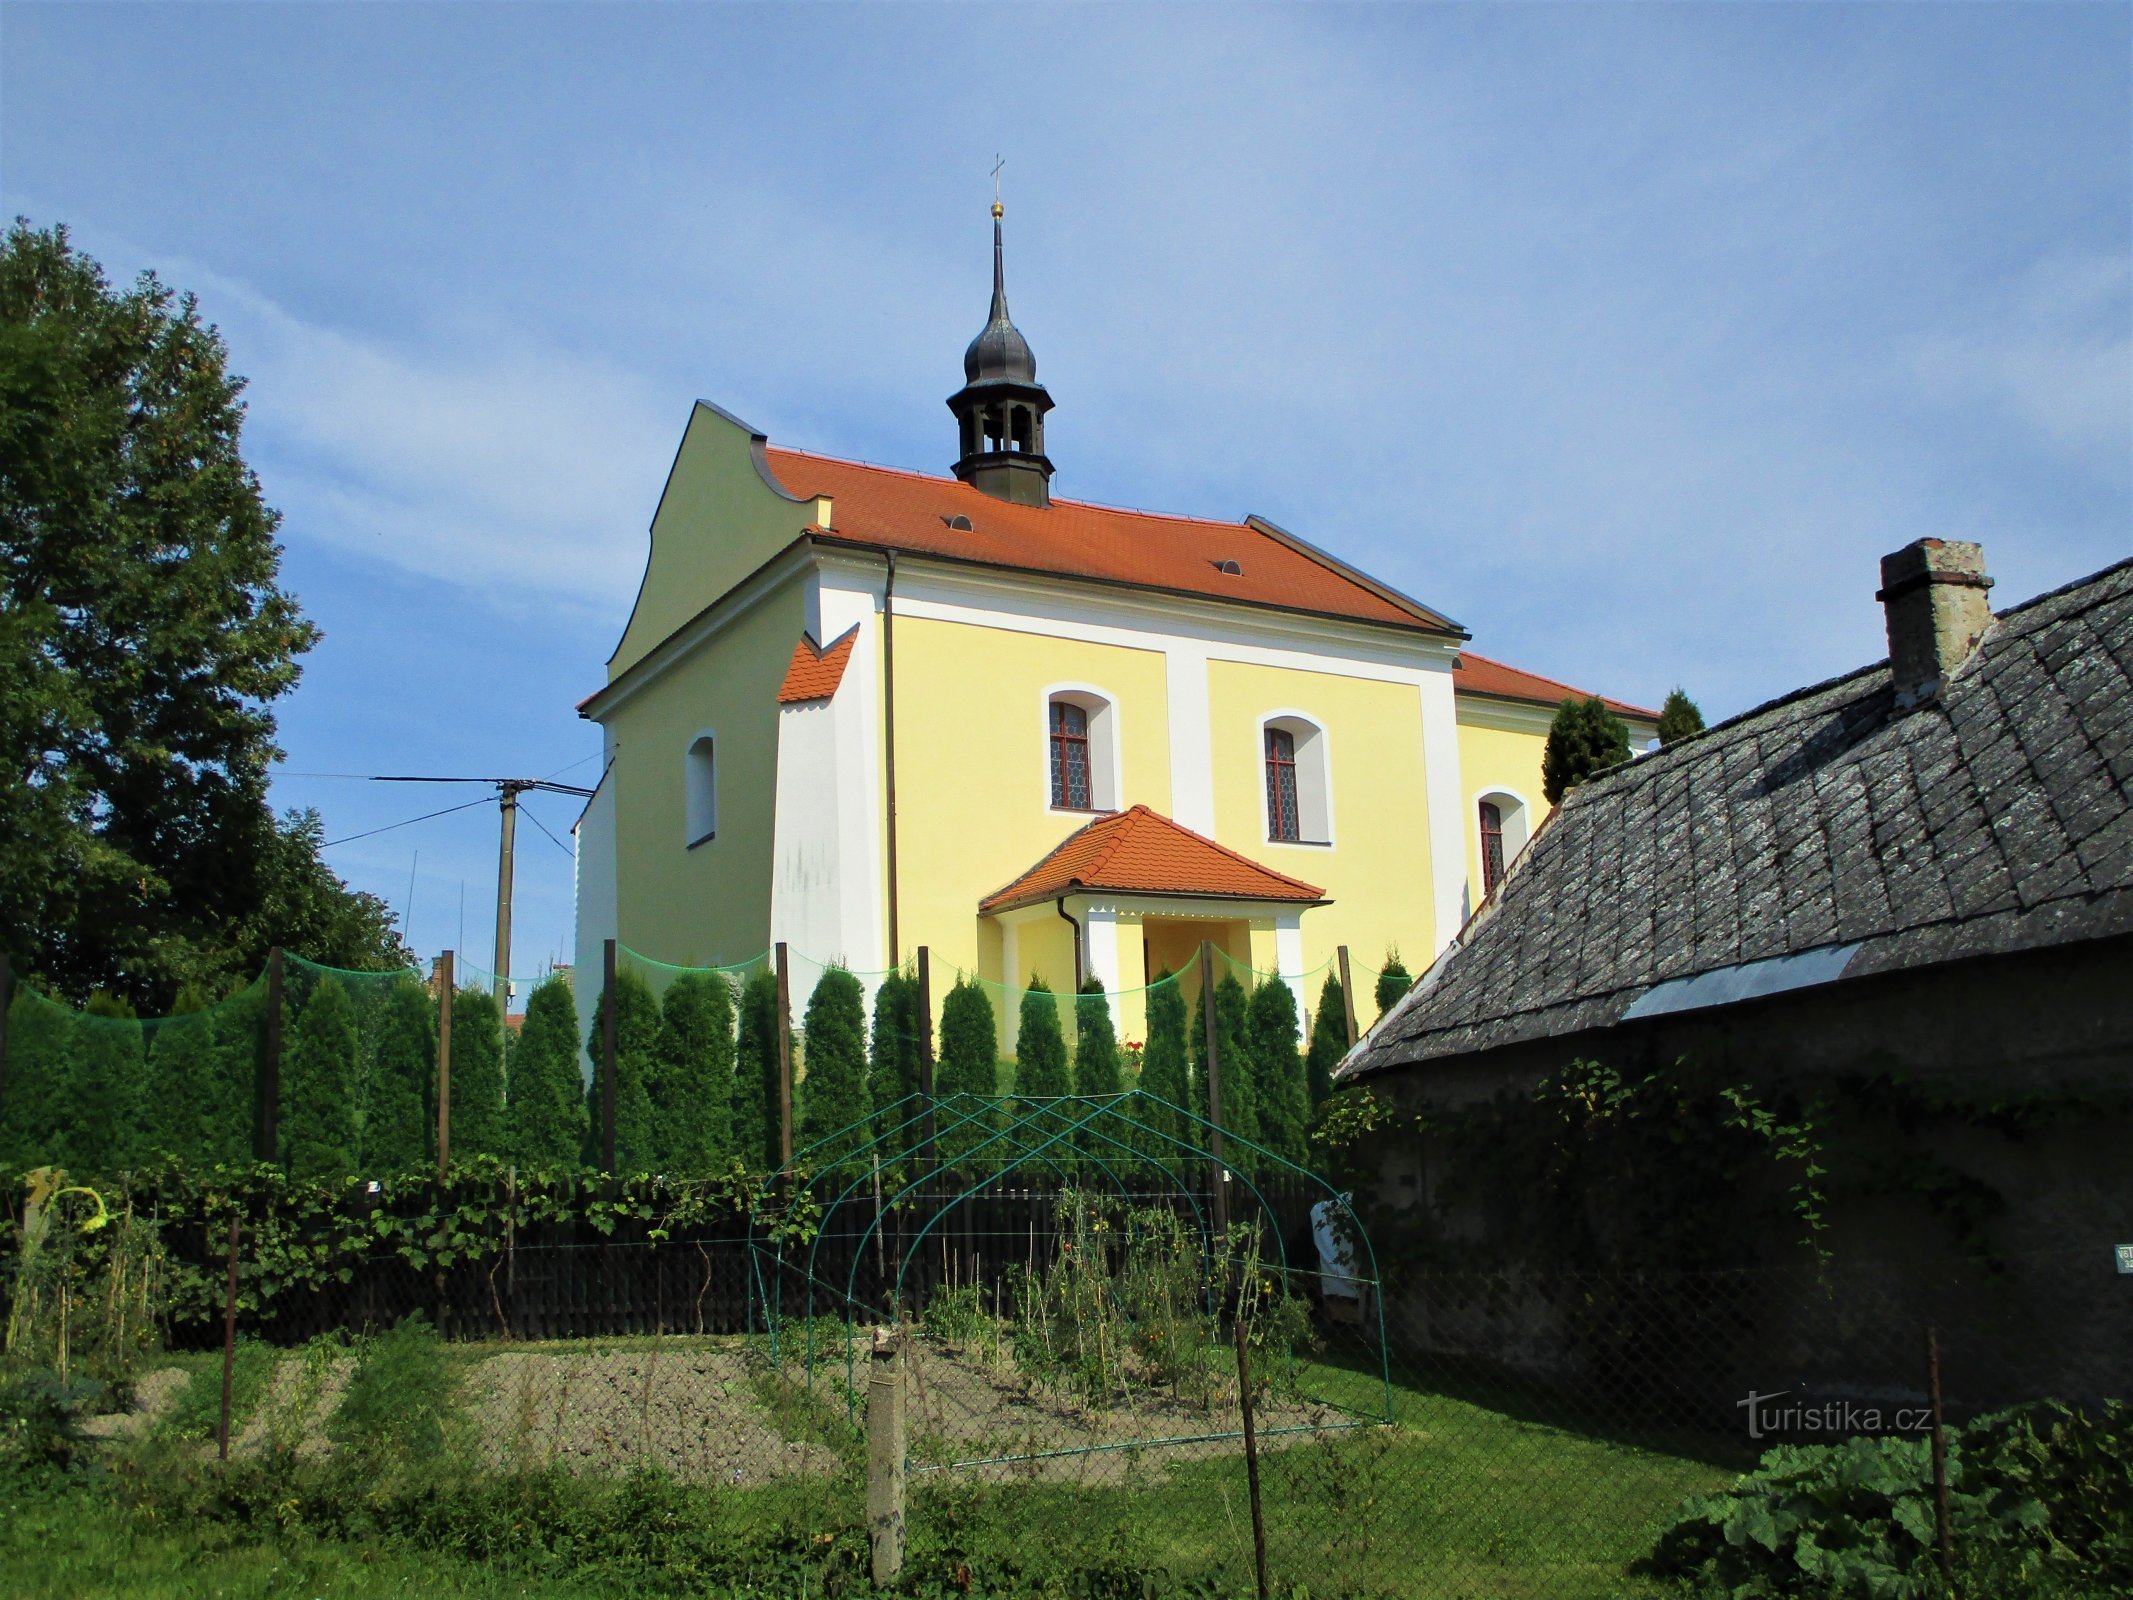 Kościół św. Wacław (Stara Voda, 13.9.2020)